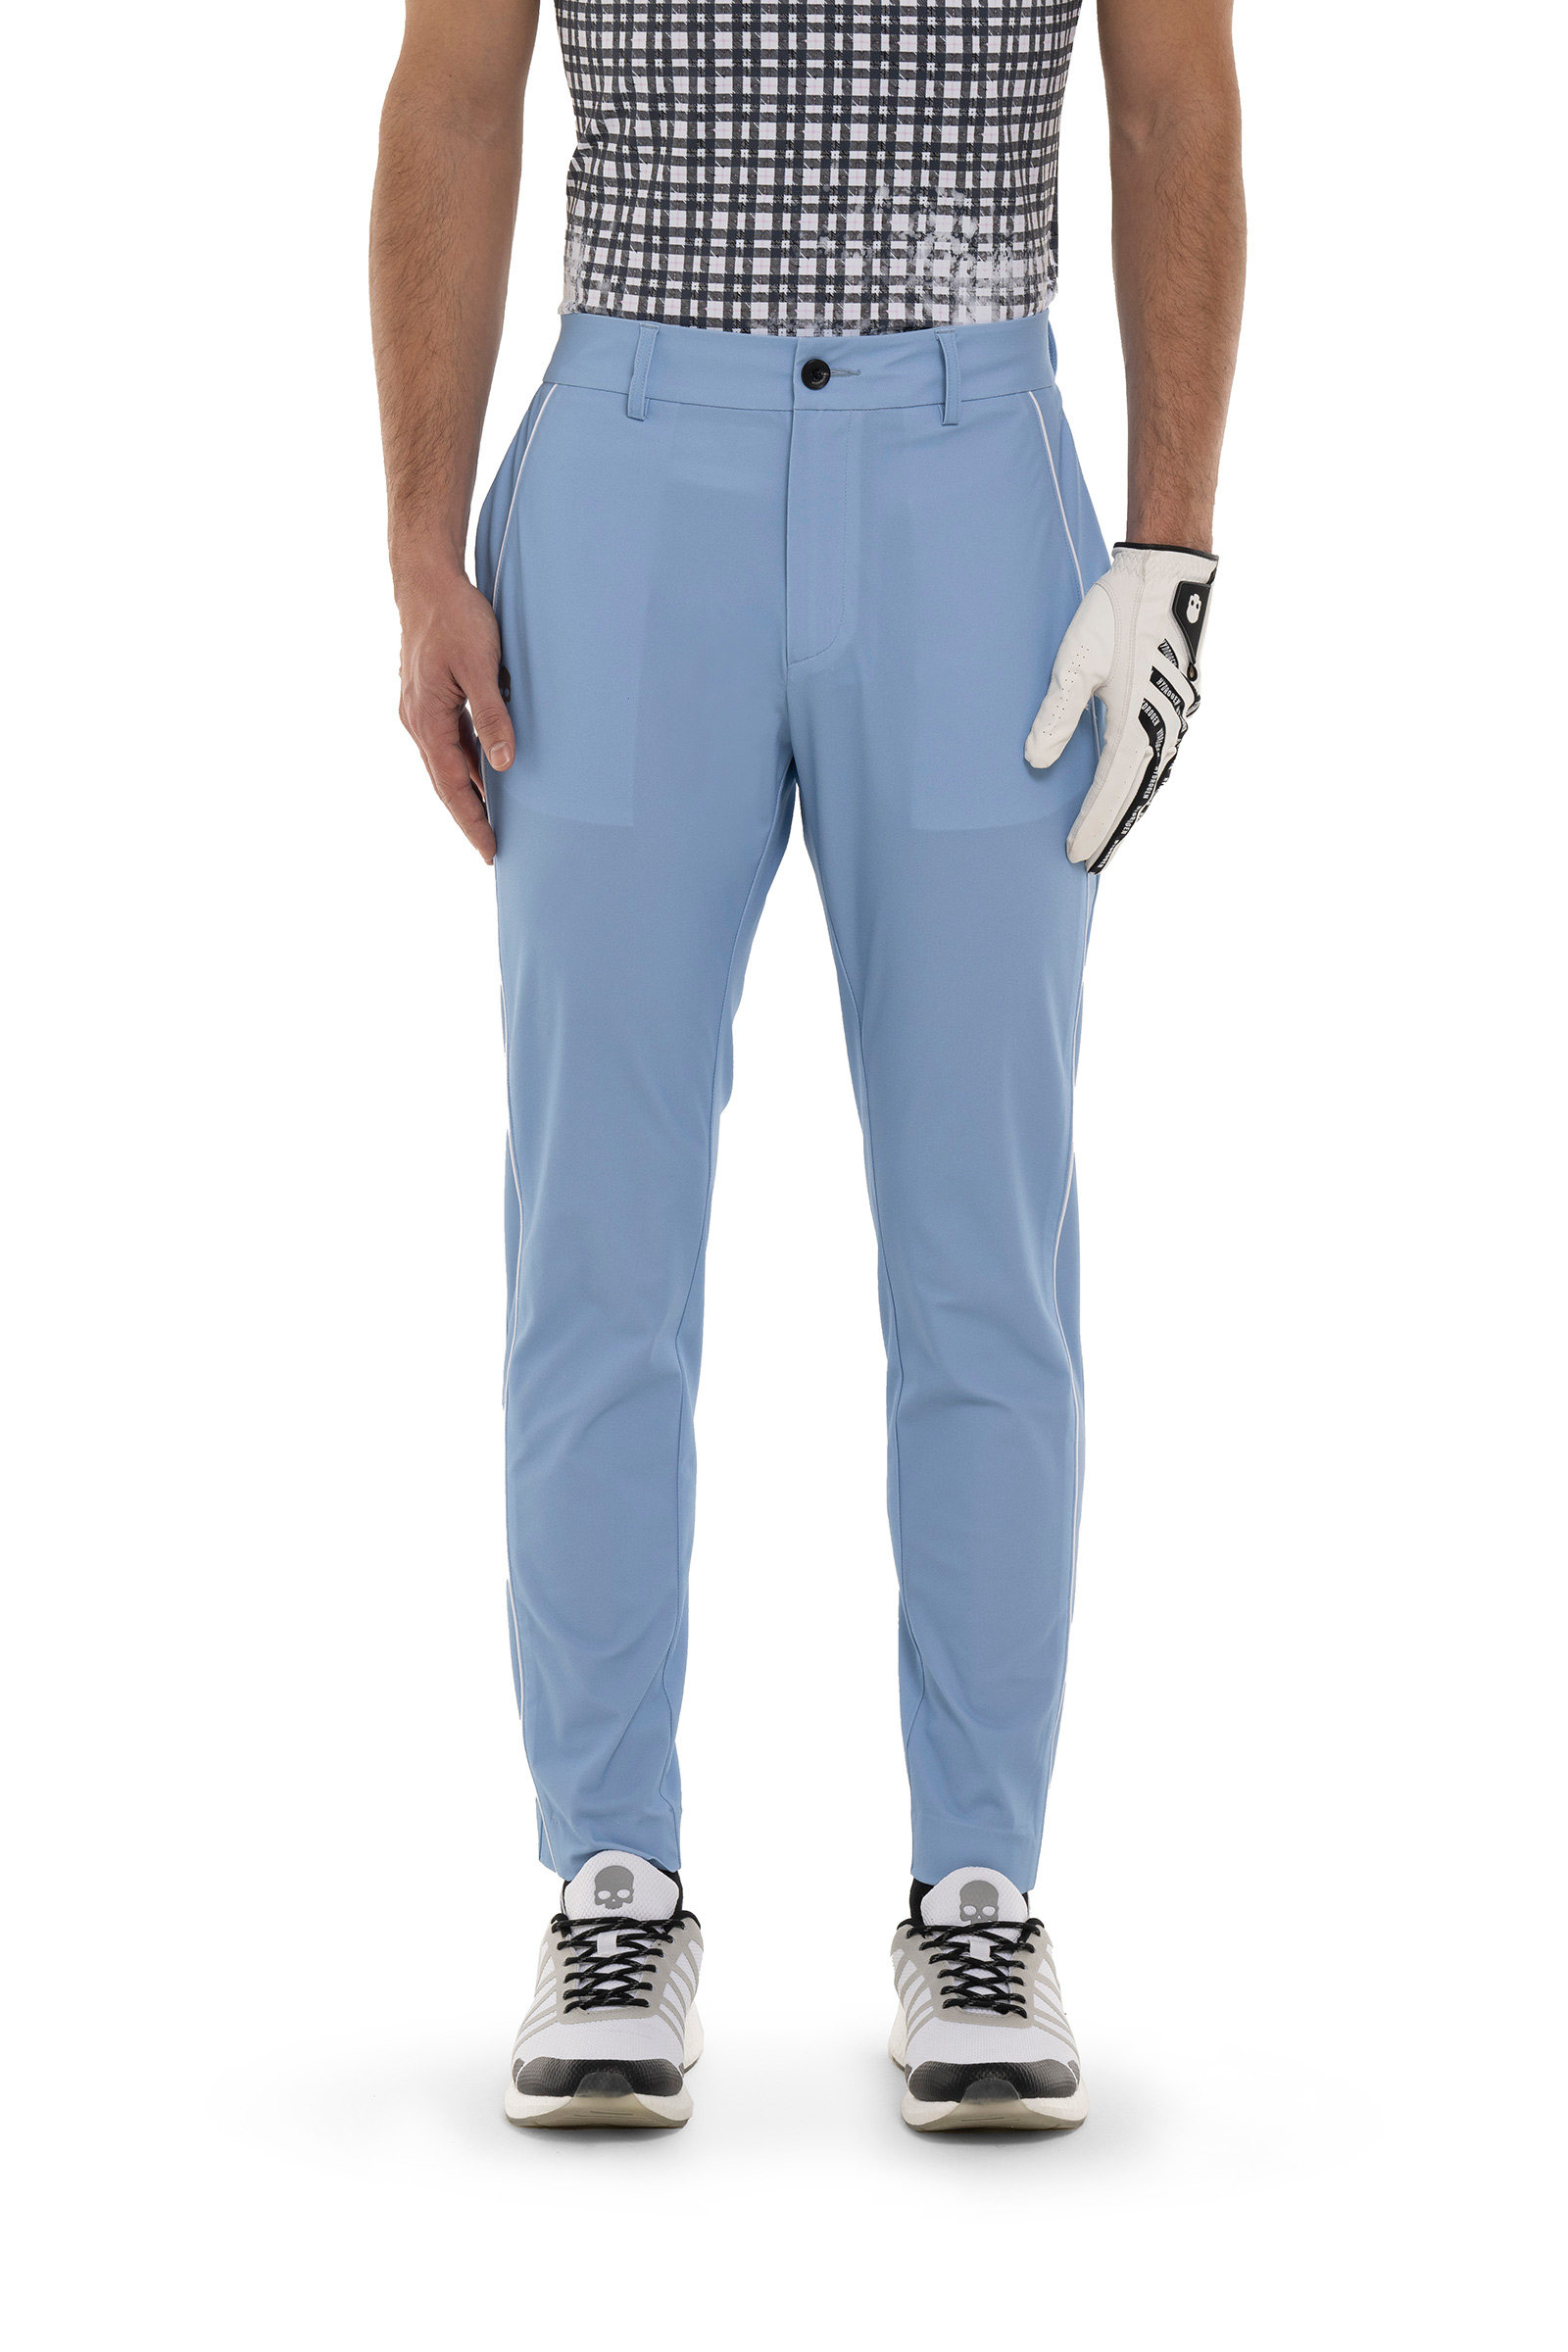 PANTALONE TECNICO PIPING - BLUE - Abbigliamento sportivo | Hydrogen